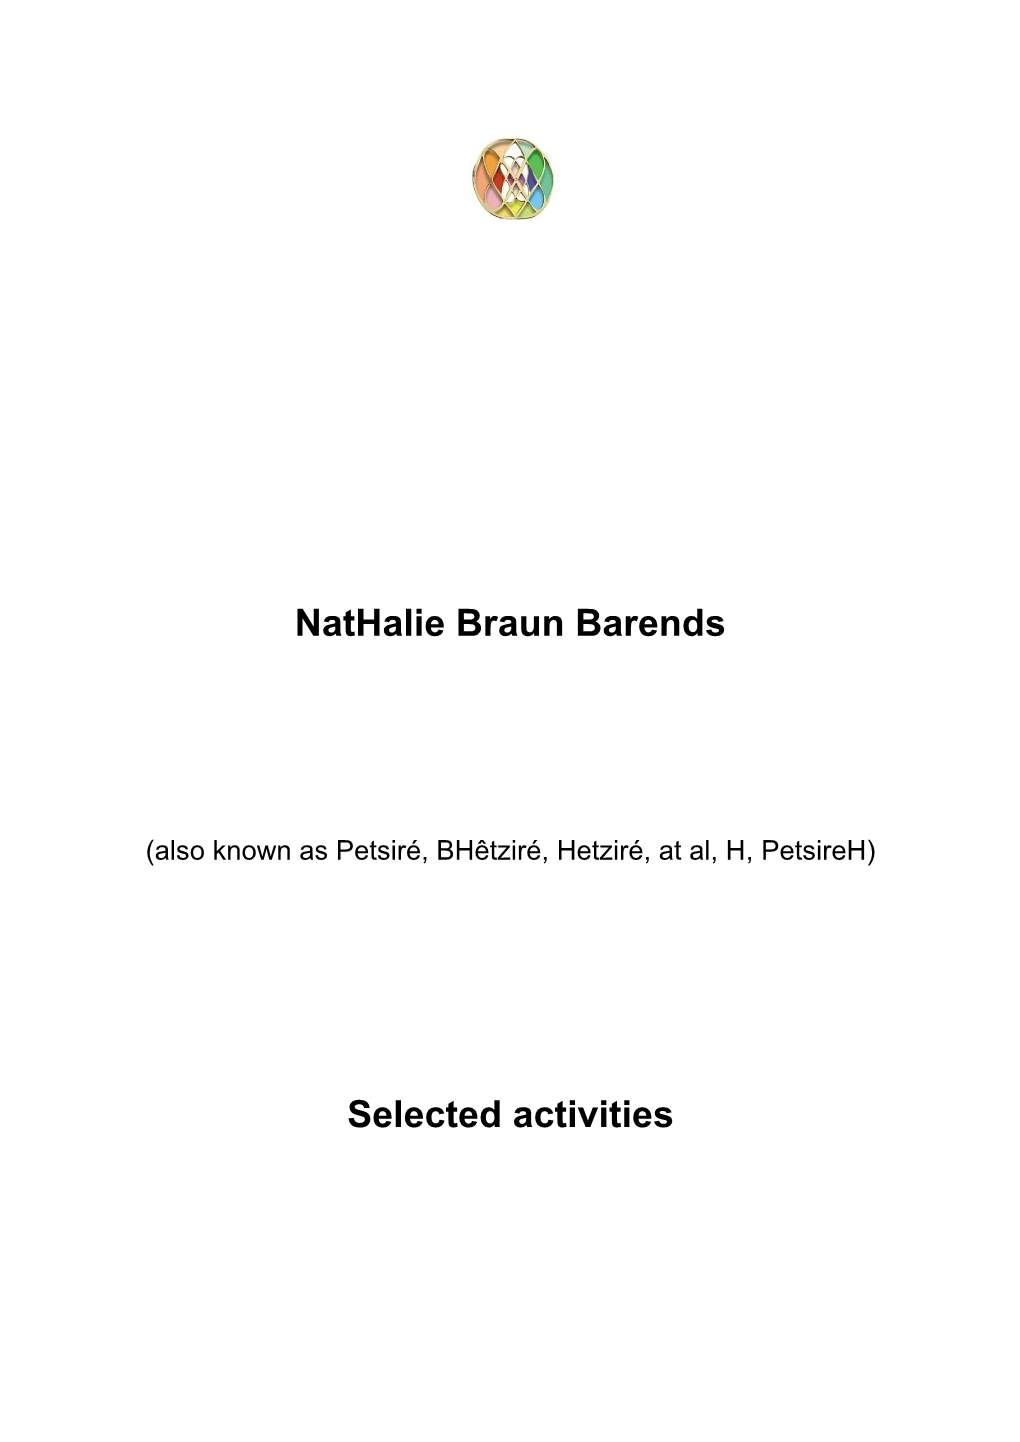 Nathalie Braun Barends Selected Activities